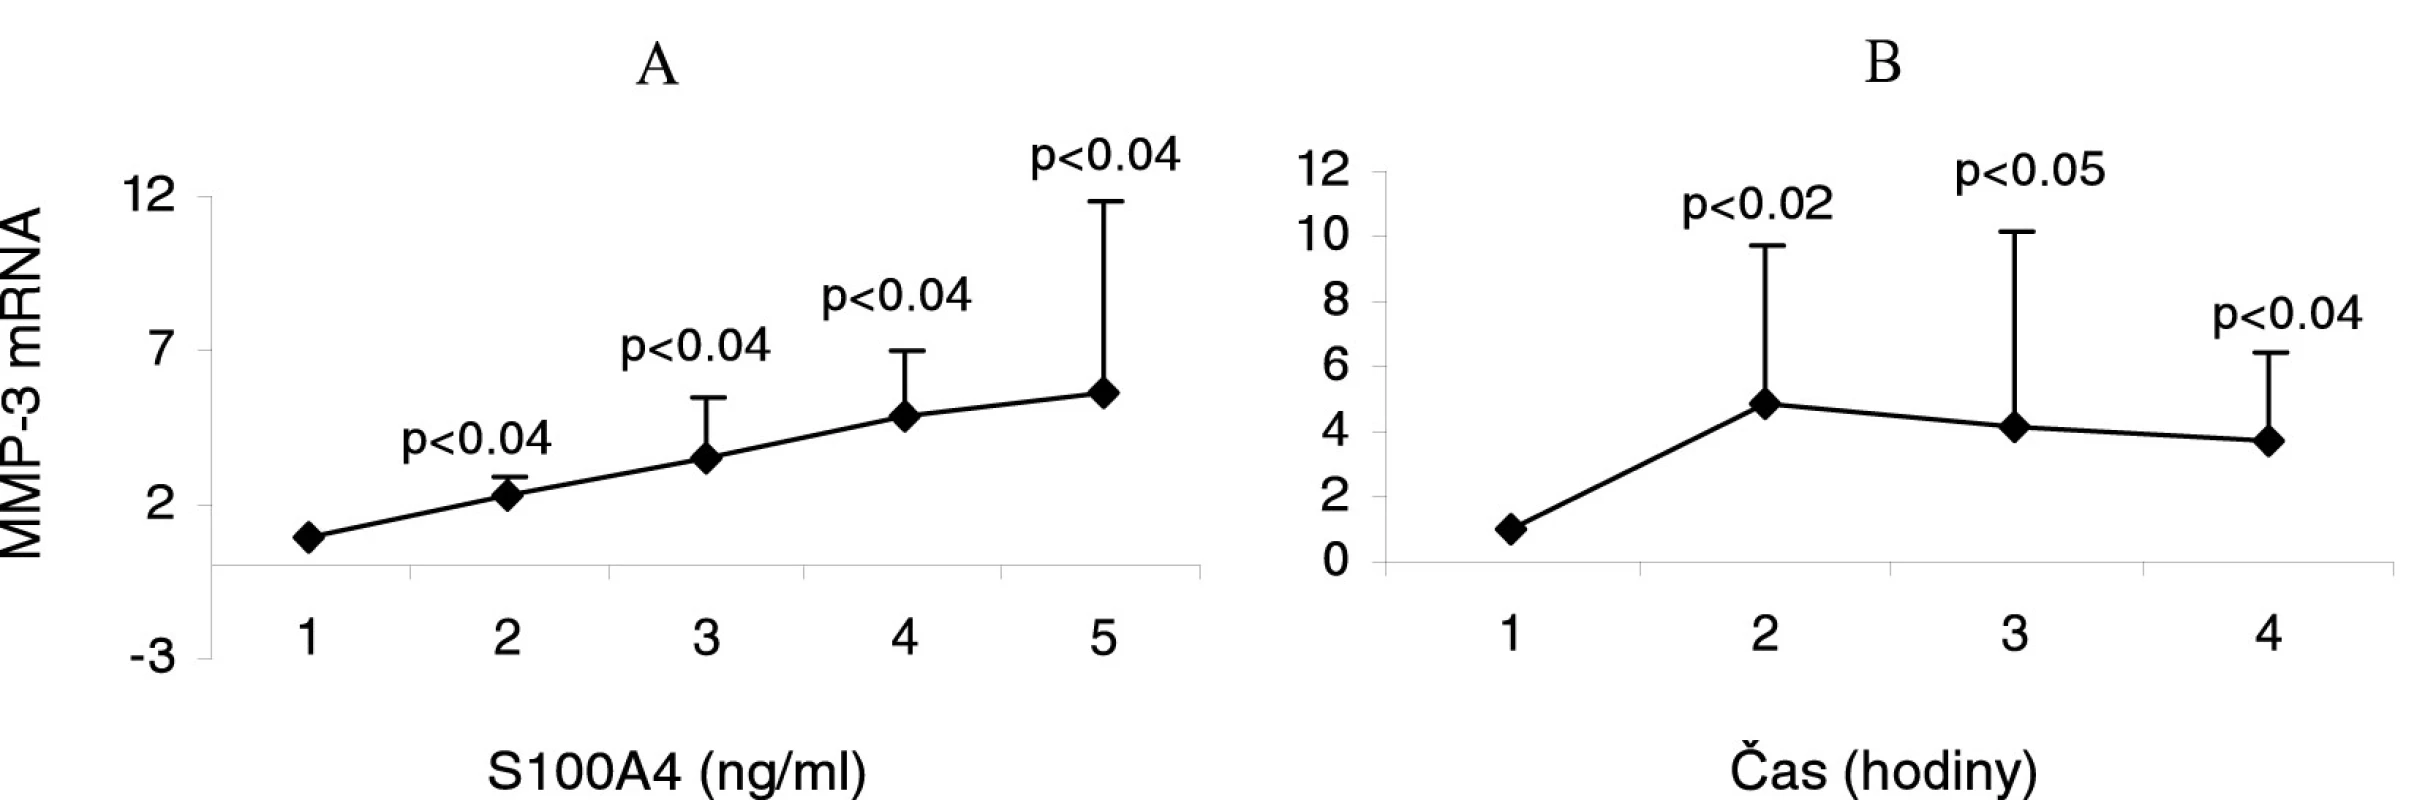 Indukce exprese MMP-3 mRNA synoviálními fibroblasty od pacientů s revmatoidní artritidou (RA) stimulovanými různými koncentracemi proteinu S100A4 po dobu 6 hodin (A). Indukce exprese MMP-3 mRNA RA synoviálními fibroblasty stimulovanými 0,5 μg/ml S100A4 po dobu 6, 12 a 24 hodin (B).